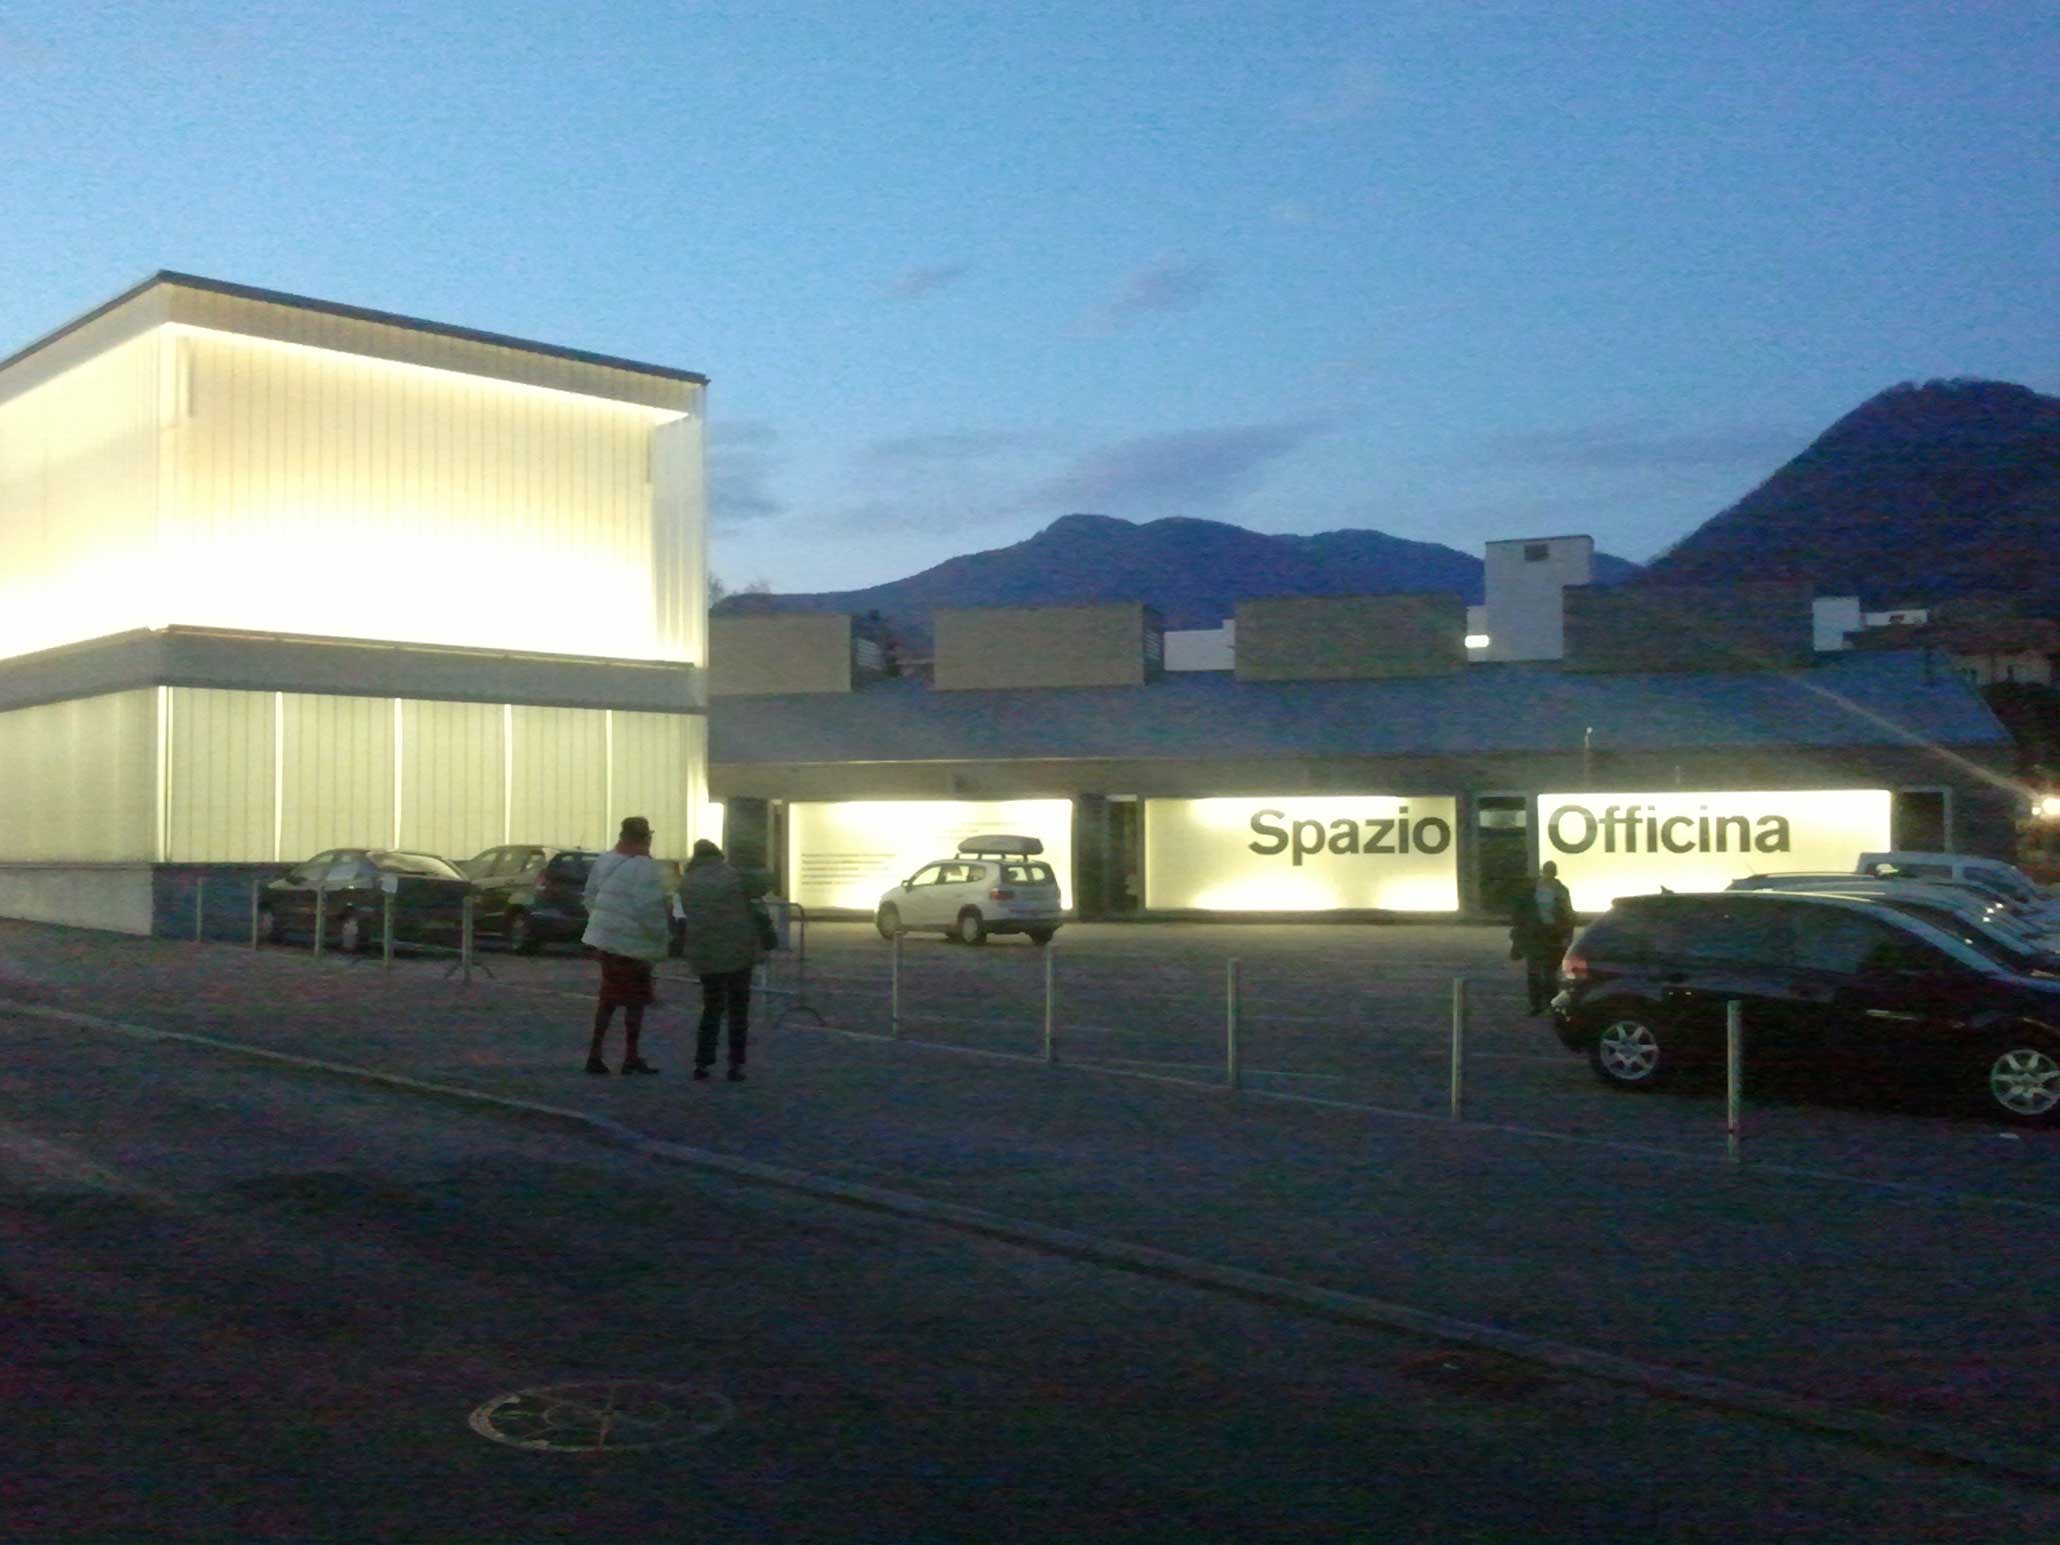 m.a.x.museo und Spazio Officina, März 2012. Gruppenausstellung 'Enigma della Modernità', Spazio Officina, Chiasso, Schweiz 2012.